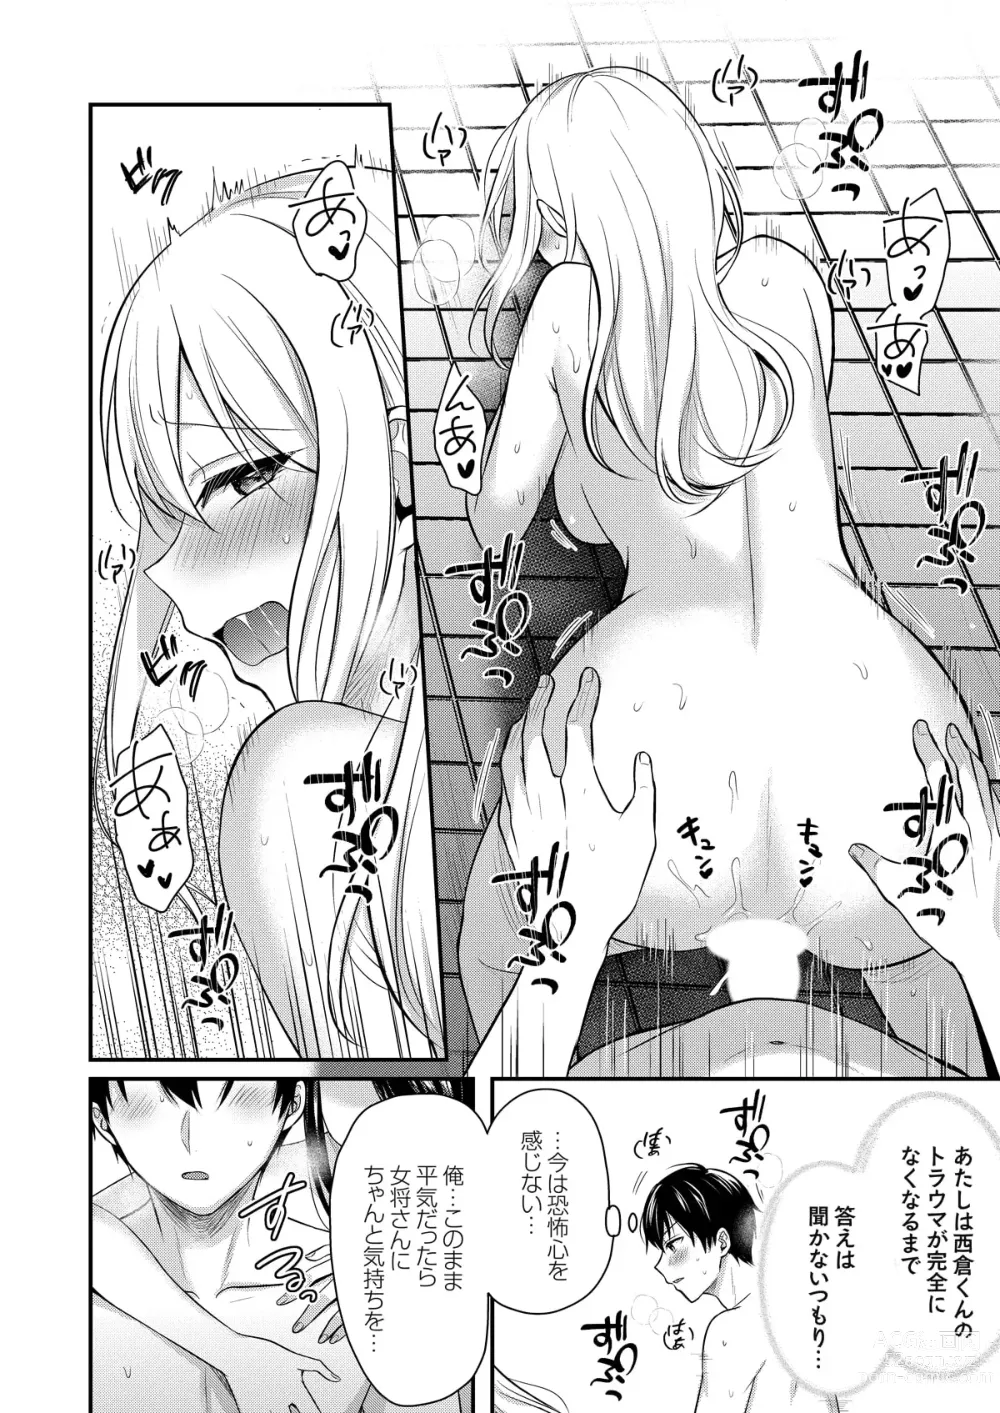 Page 186 of manga Ore no Natsuyasumi wa Gal no Wakaokami to Beit Seikatsu!?